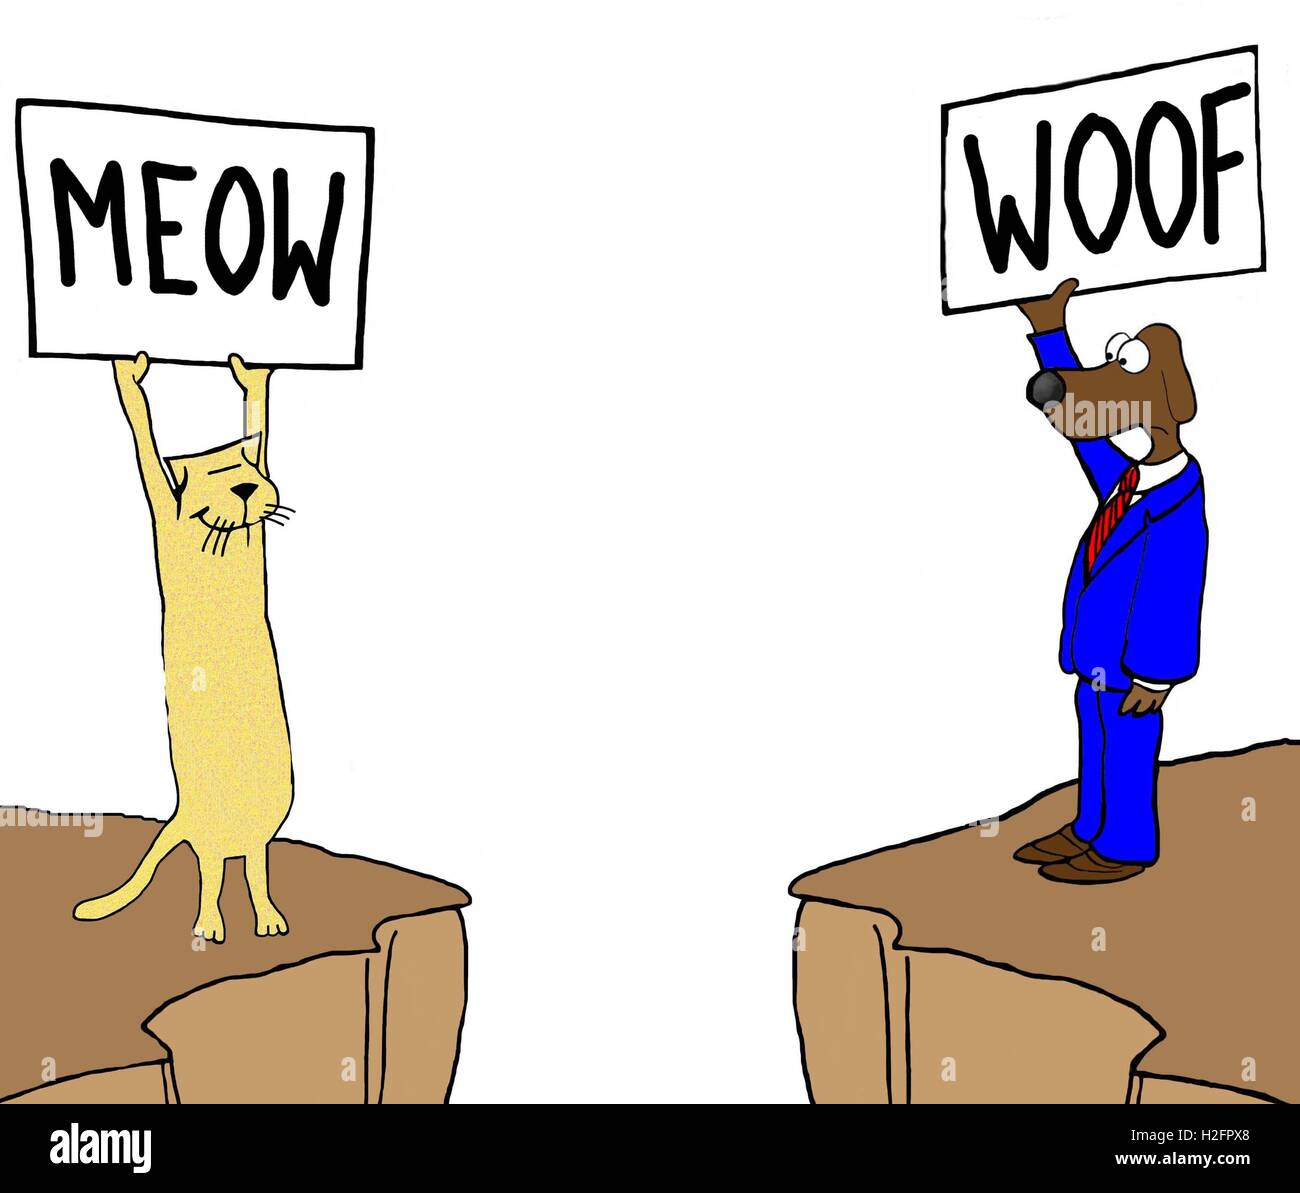 Illustration couleur d'un chat et chien en falaises différentes holding sign que 'meow' et 'woof', respectivement, Banque D'Images